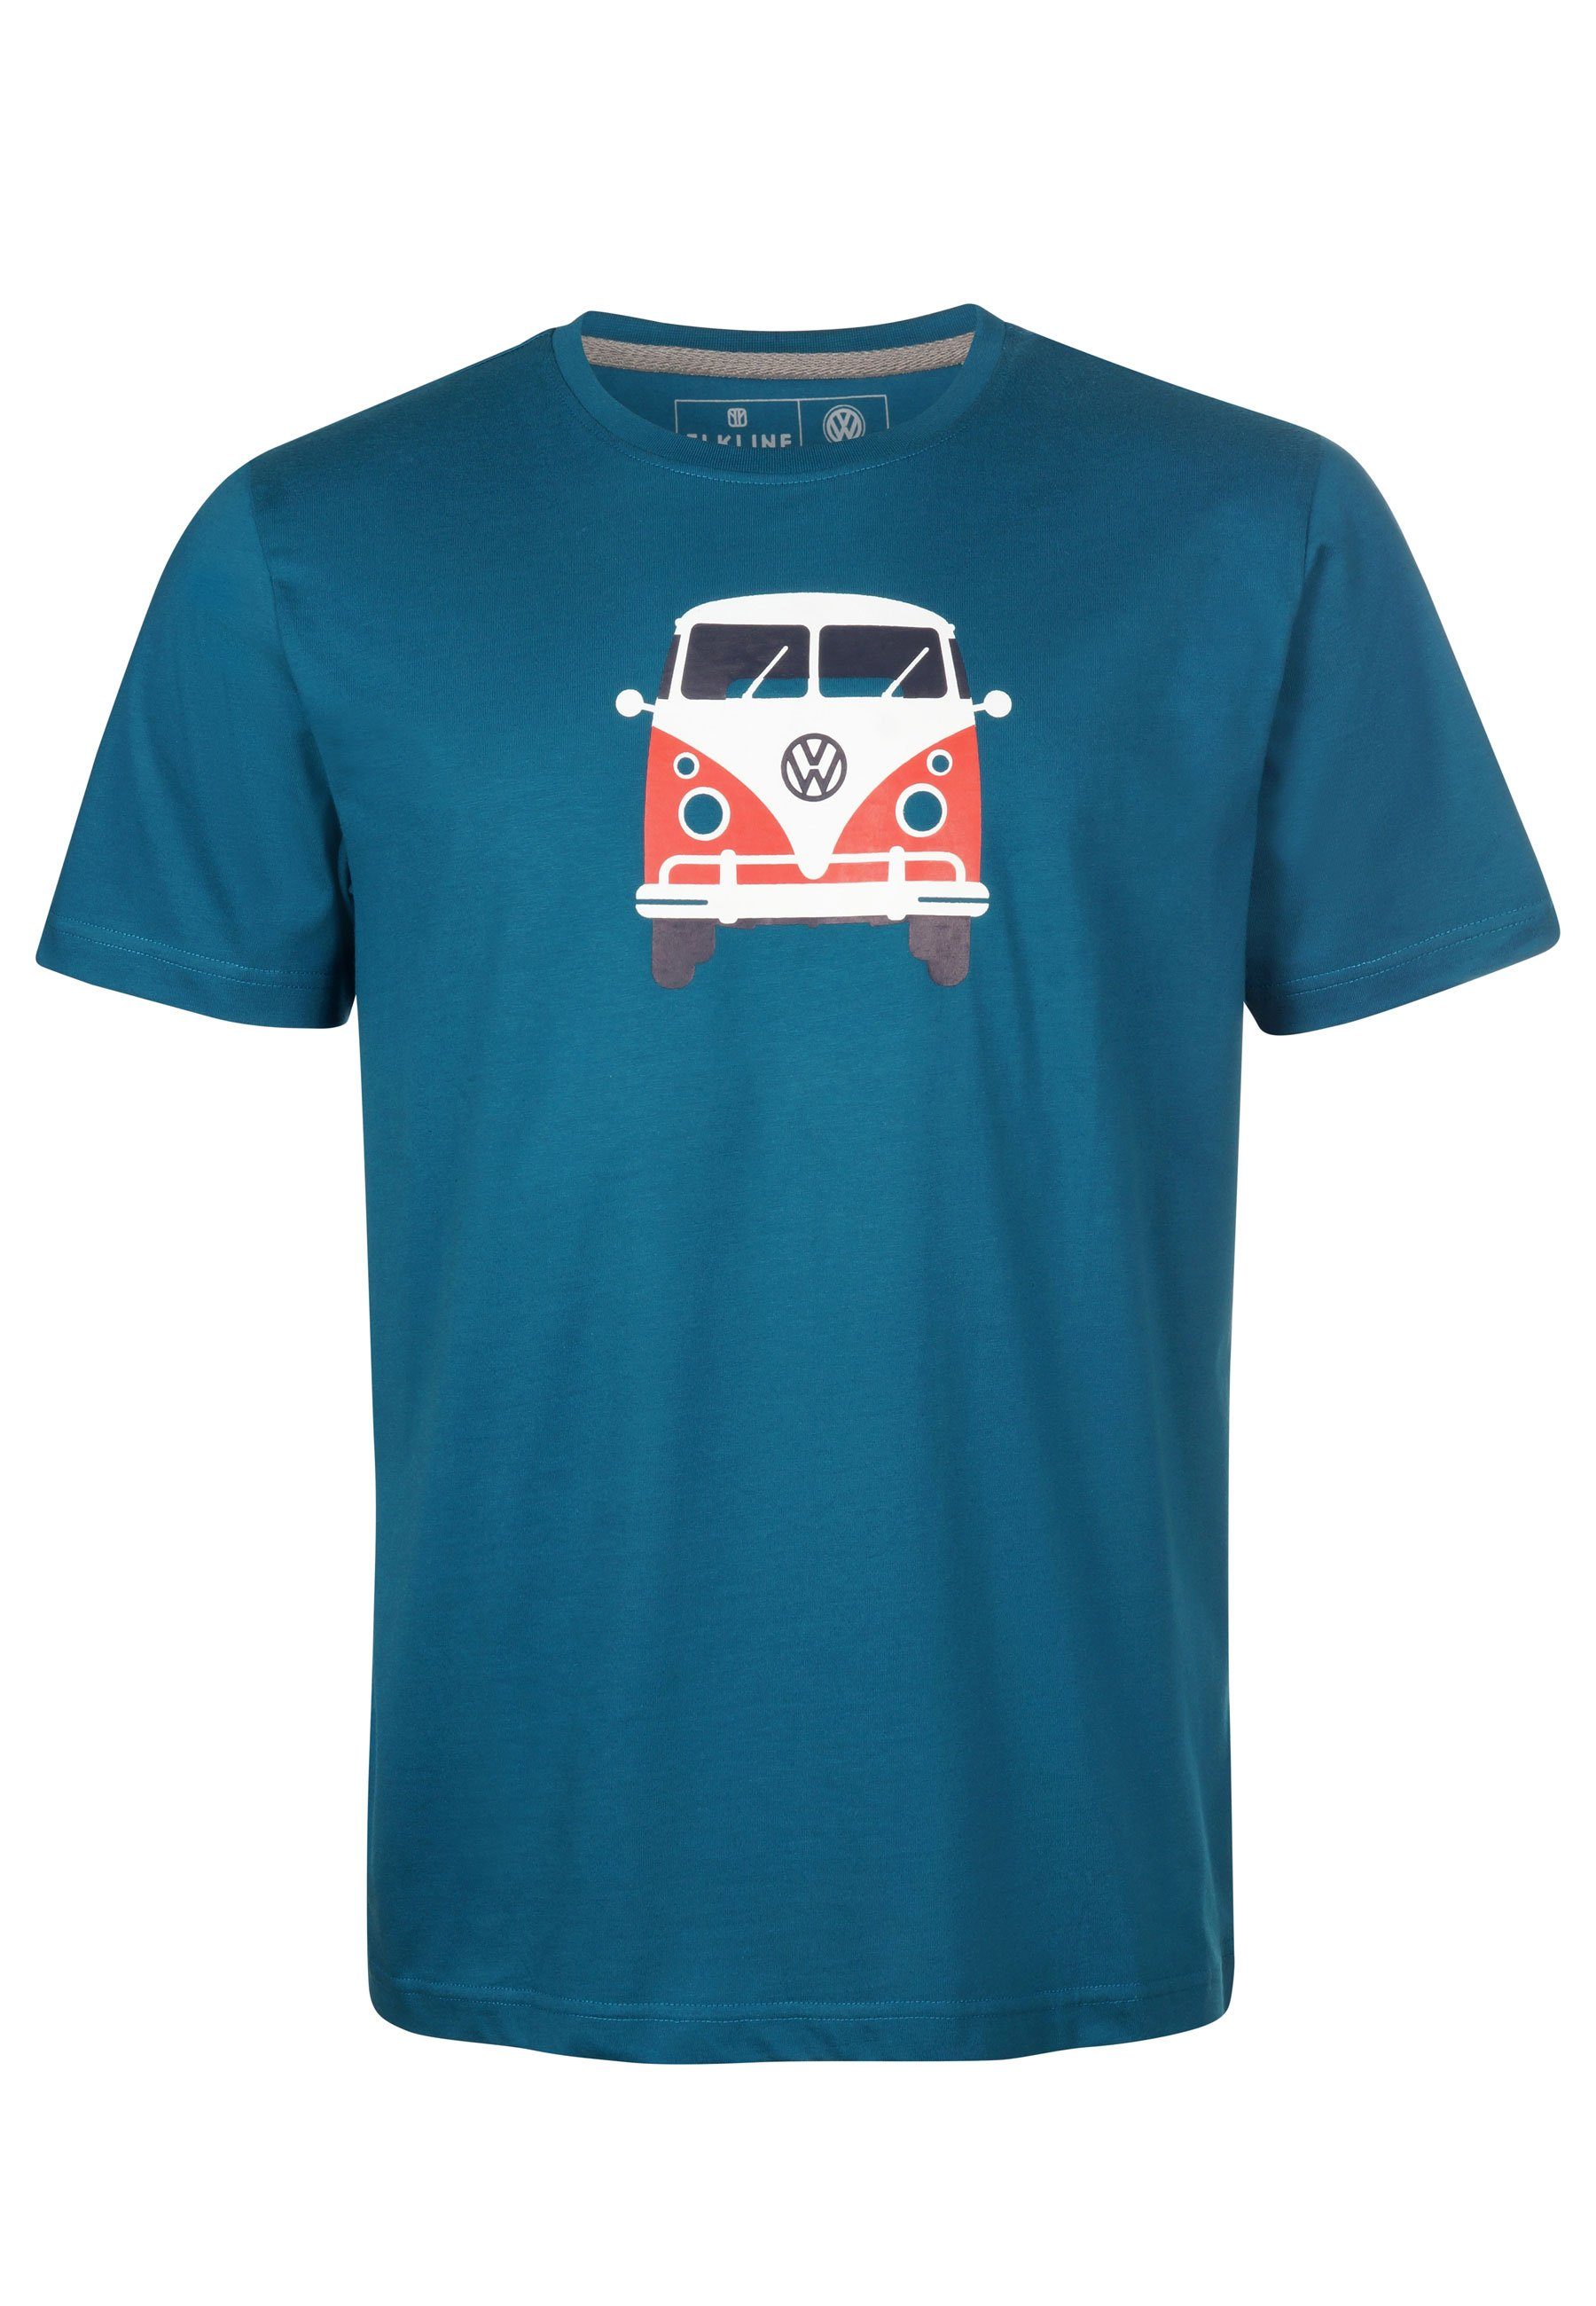 Elkline T-Shirt Methusalem lizenzierter VW Bulli Brust Rücken Print blue coral